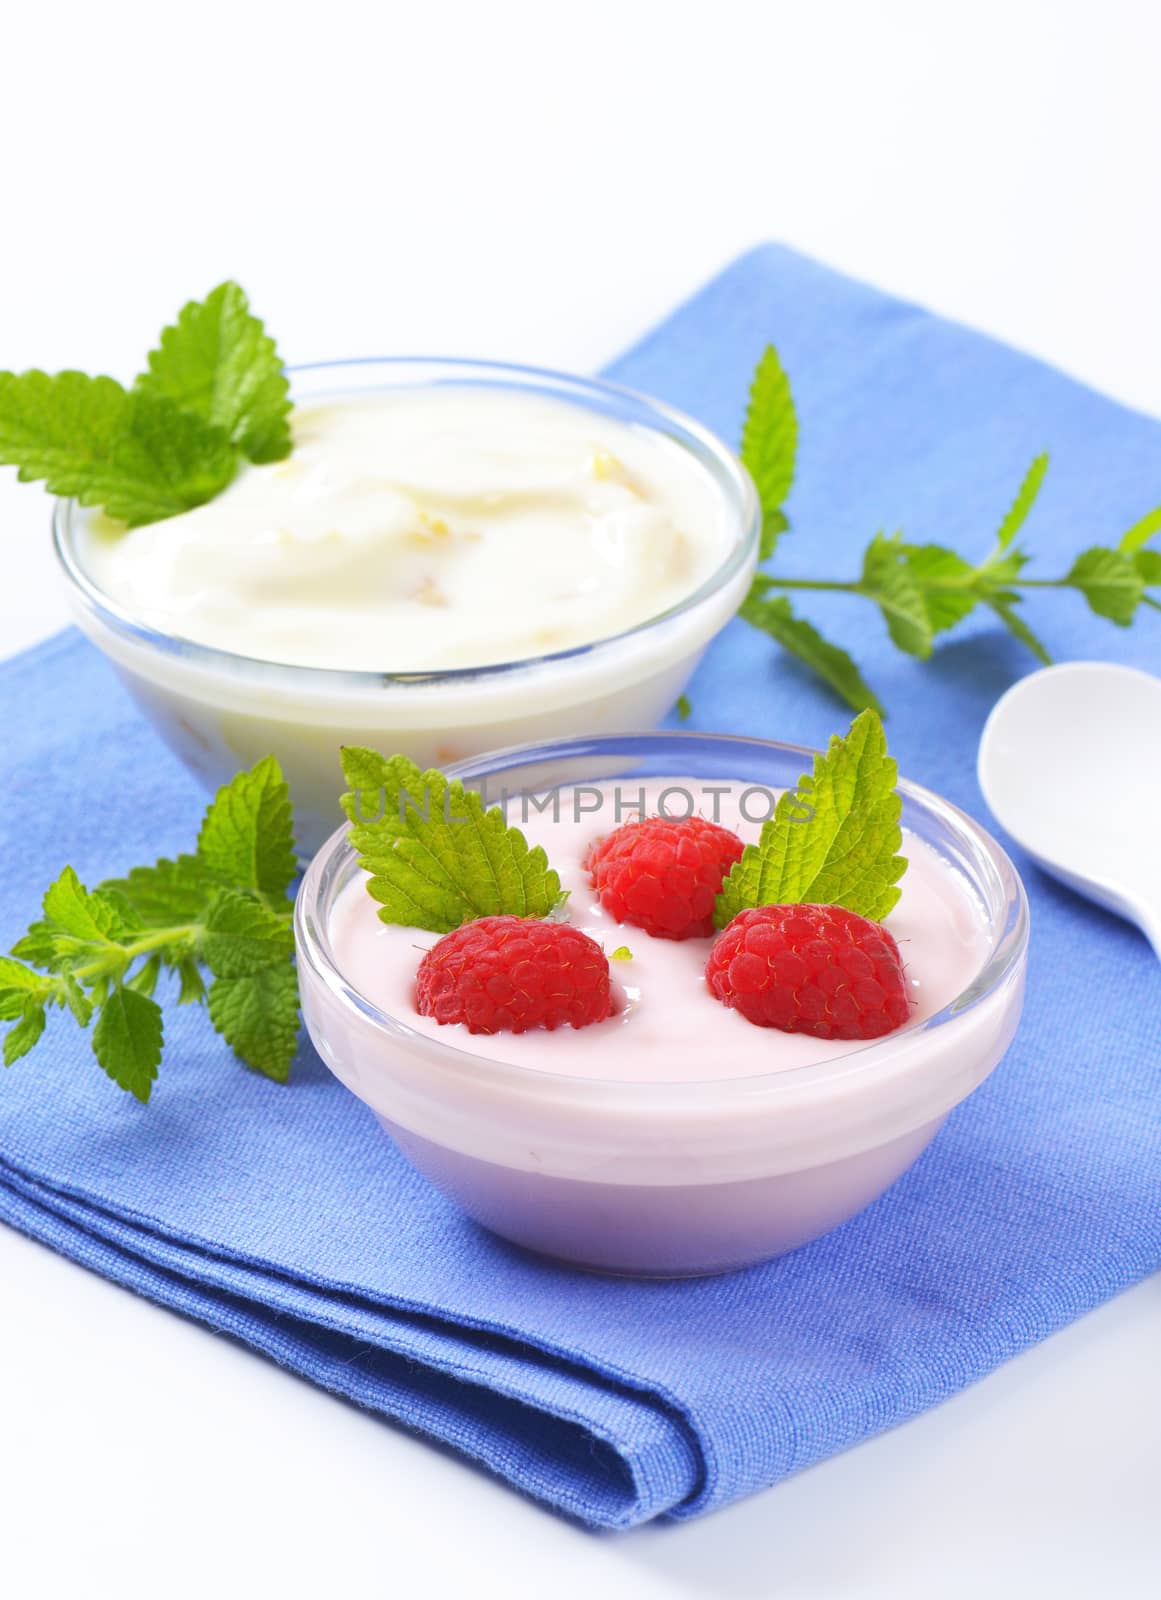 bowls of fruit yogurt on blue napkin